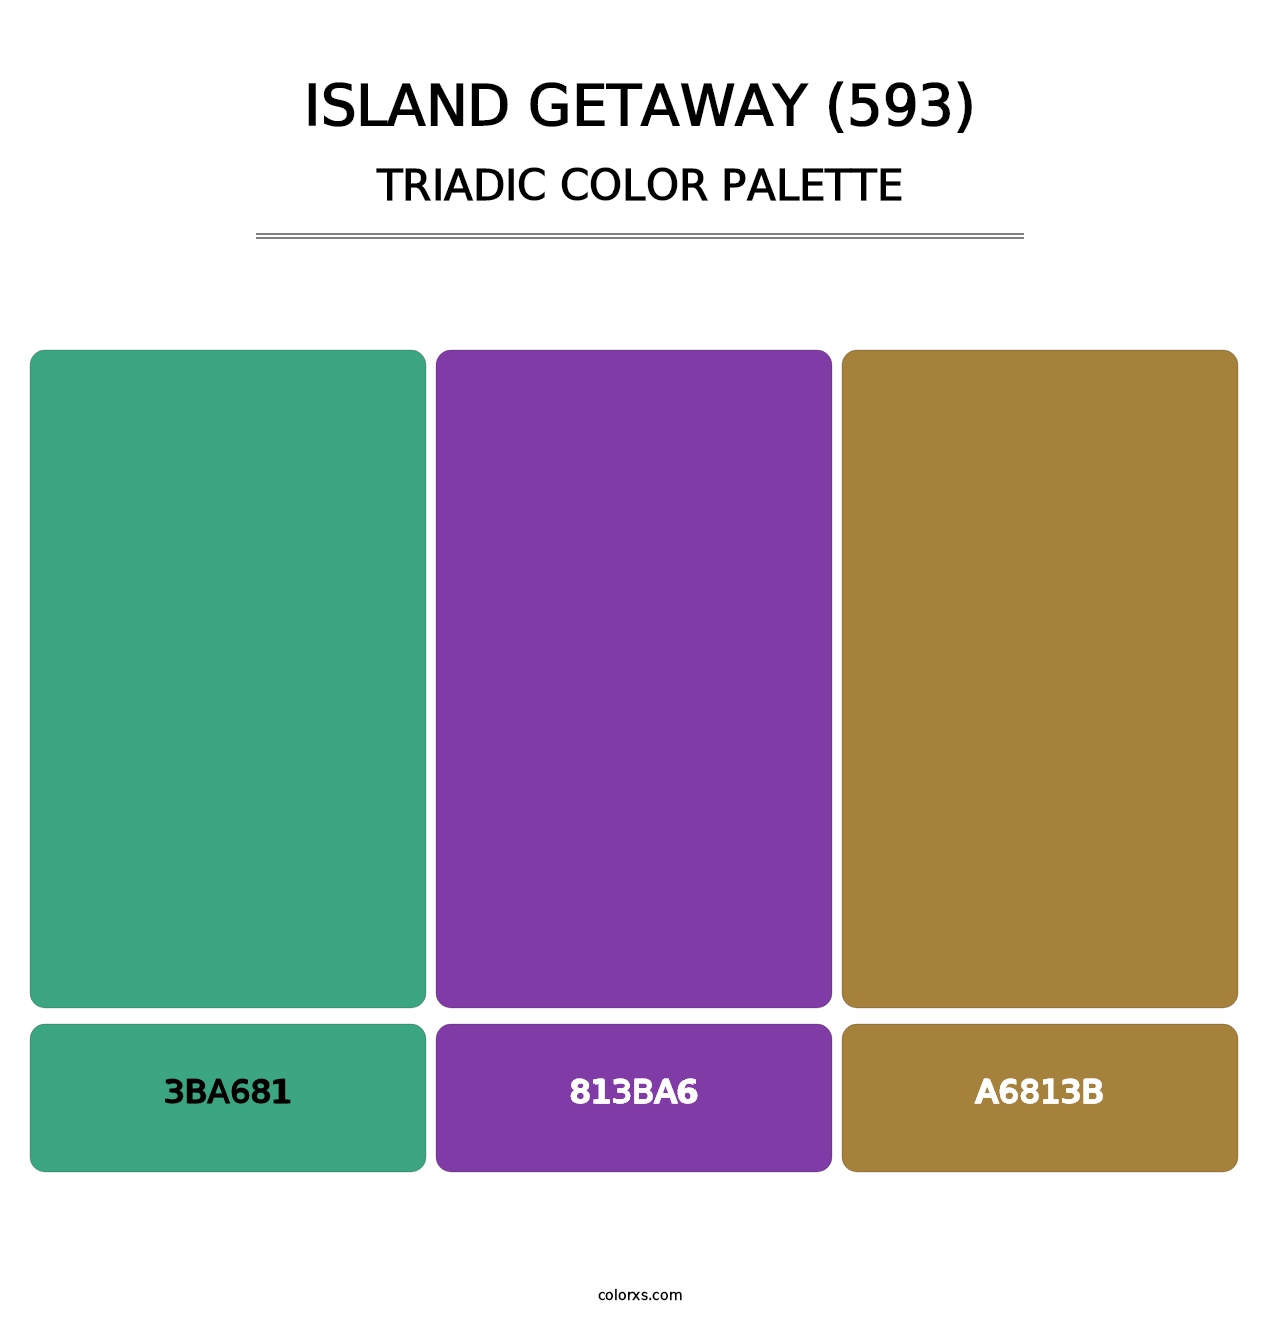 Island Getaway (593) - Triadic Color Palette